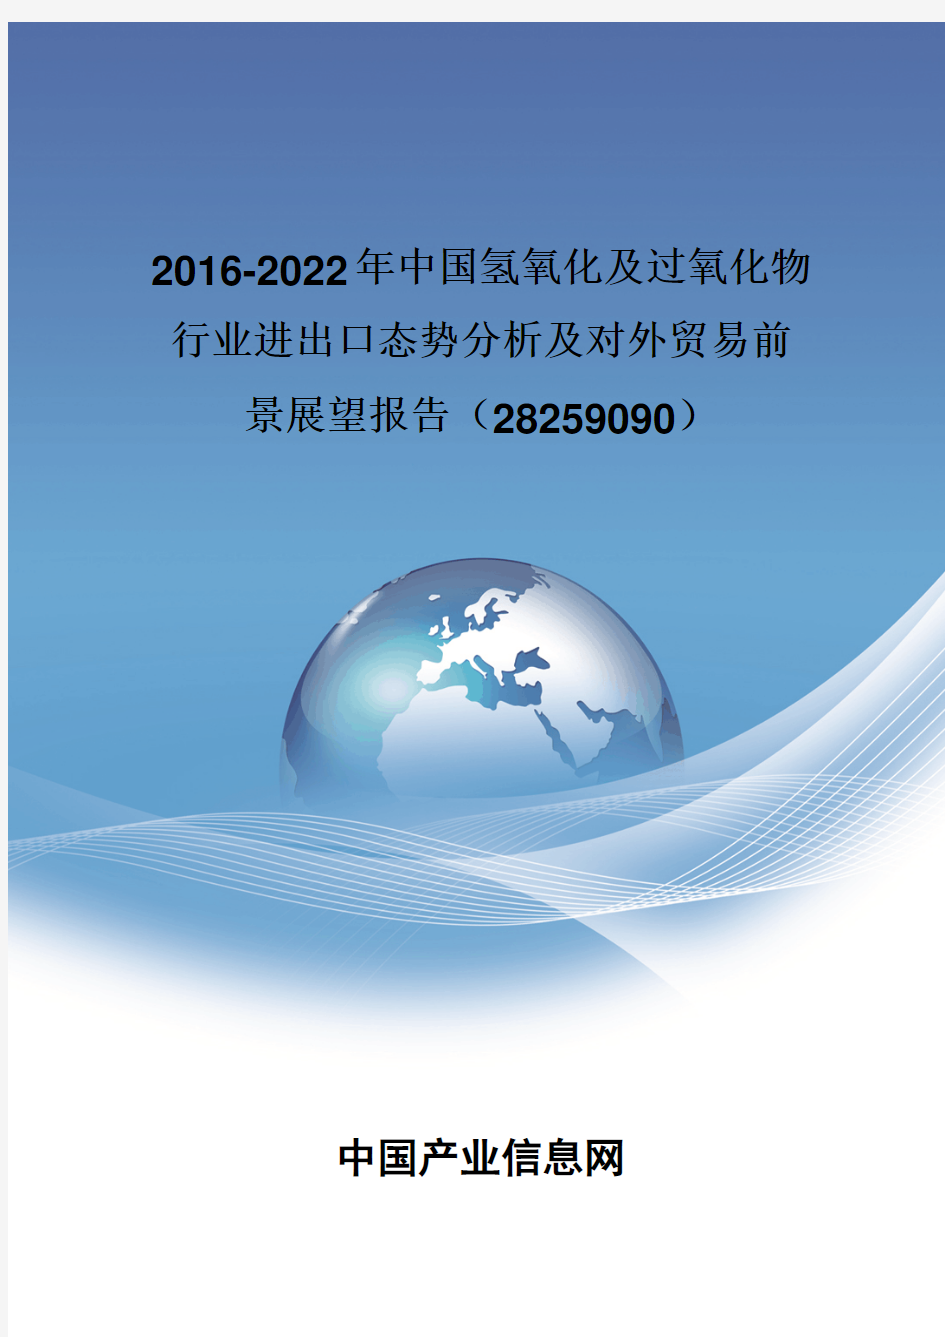 2016-2022年中国氢氧化及过氧化物行业进出口态势分析报告(28259090)